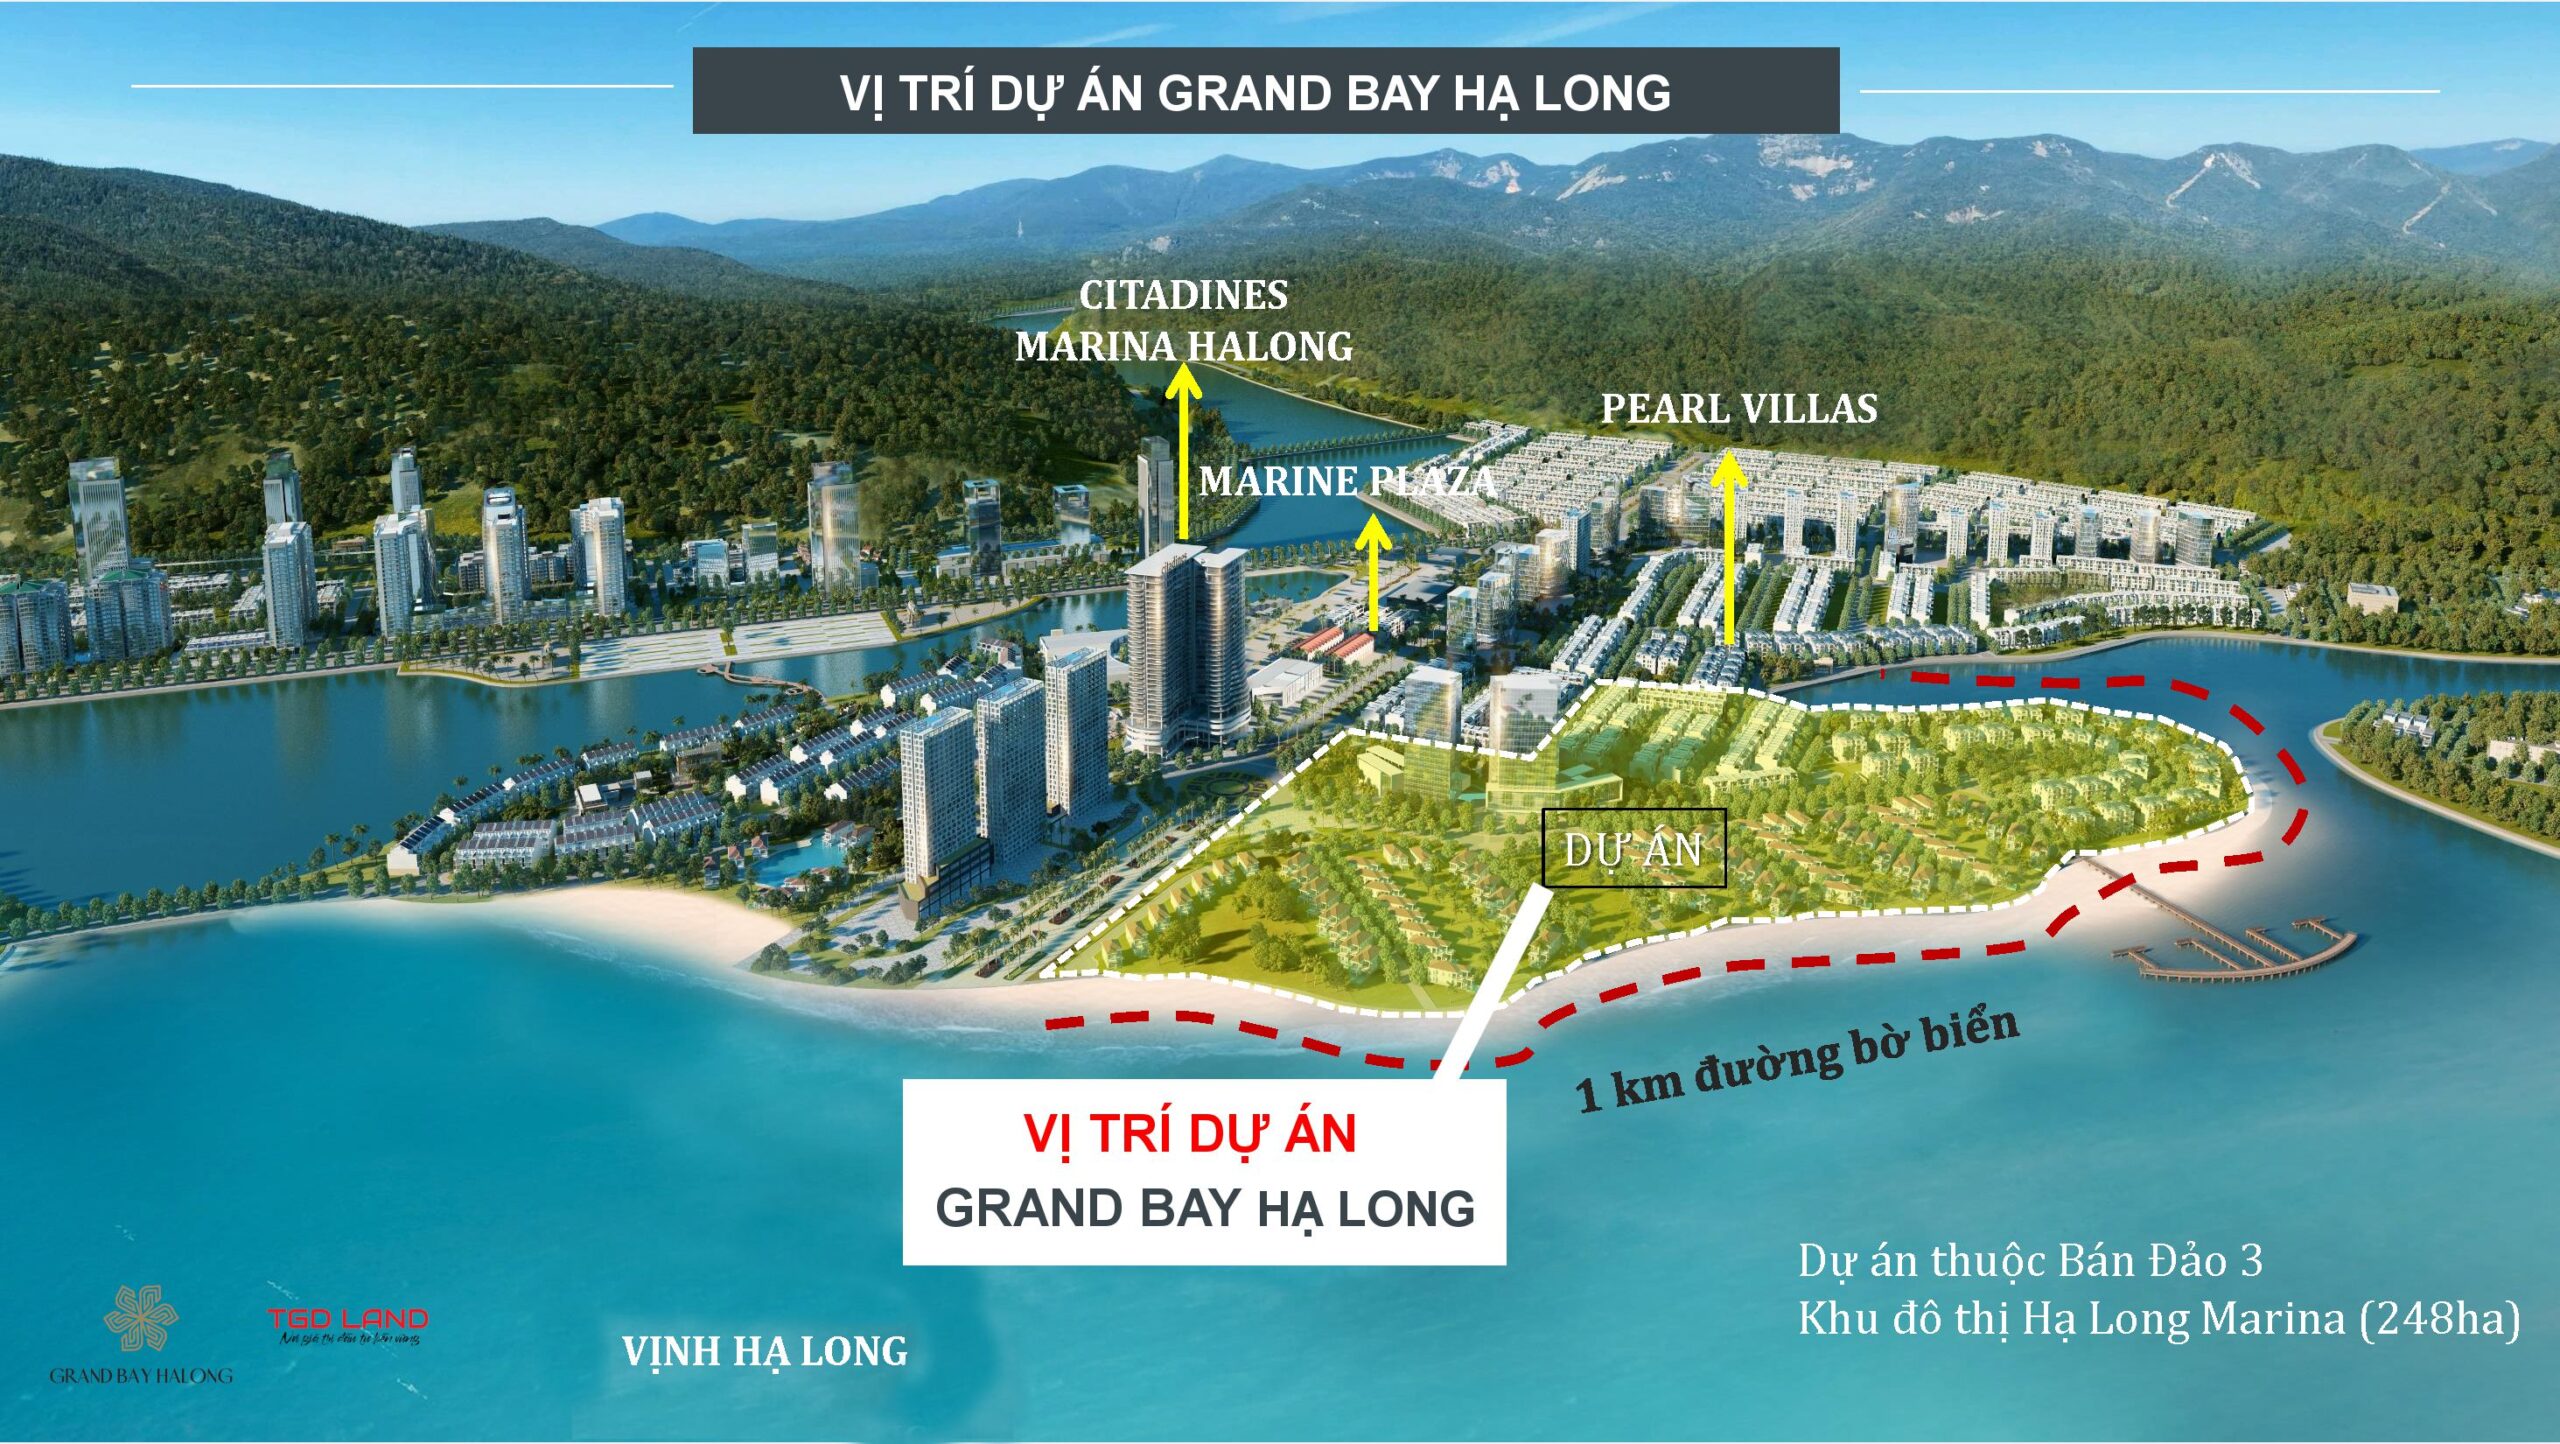 Vị trí dư án Grand Bay Hạ Long 2021